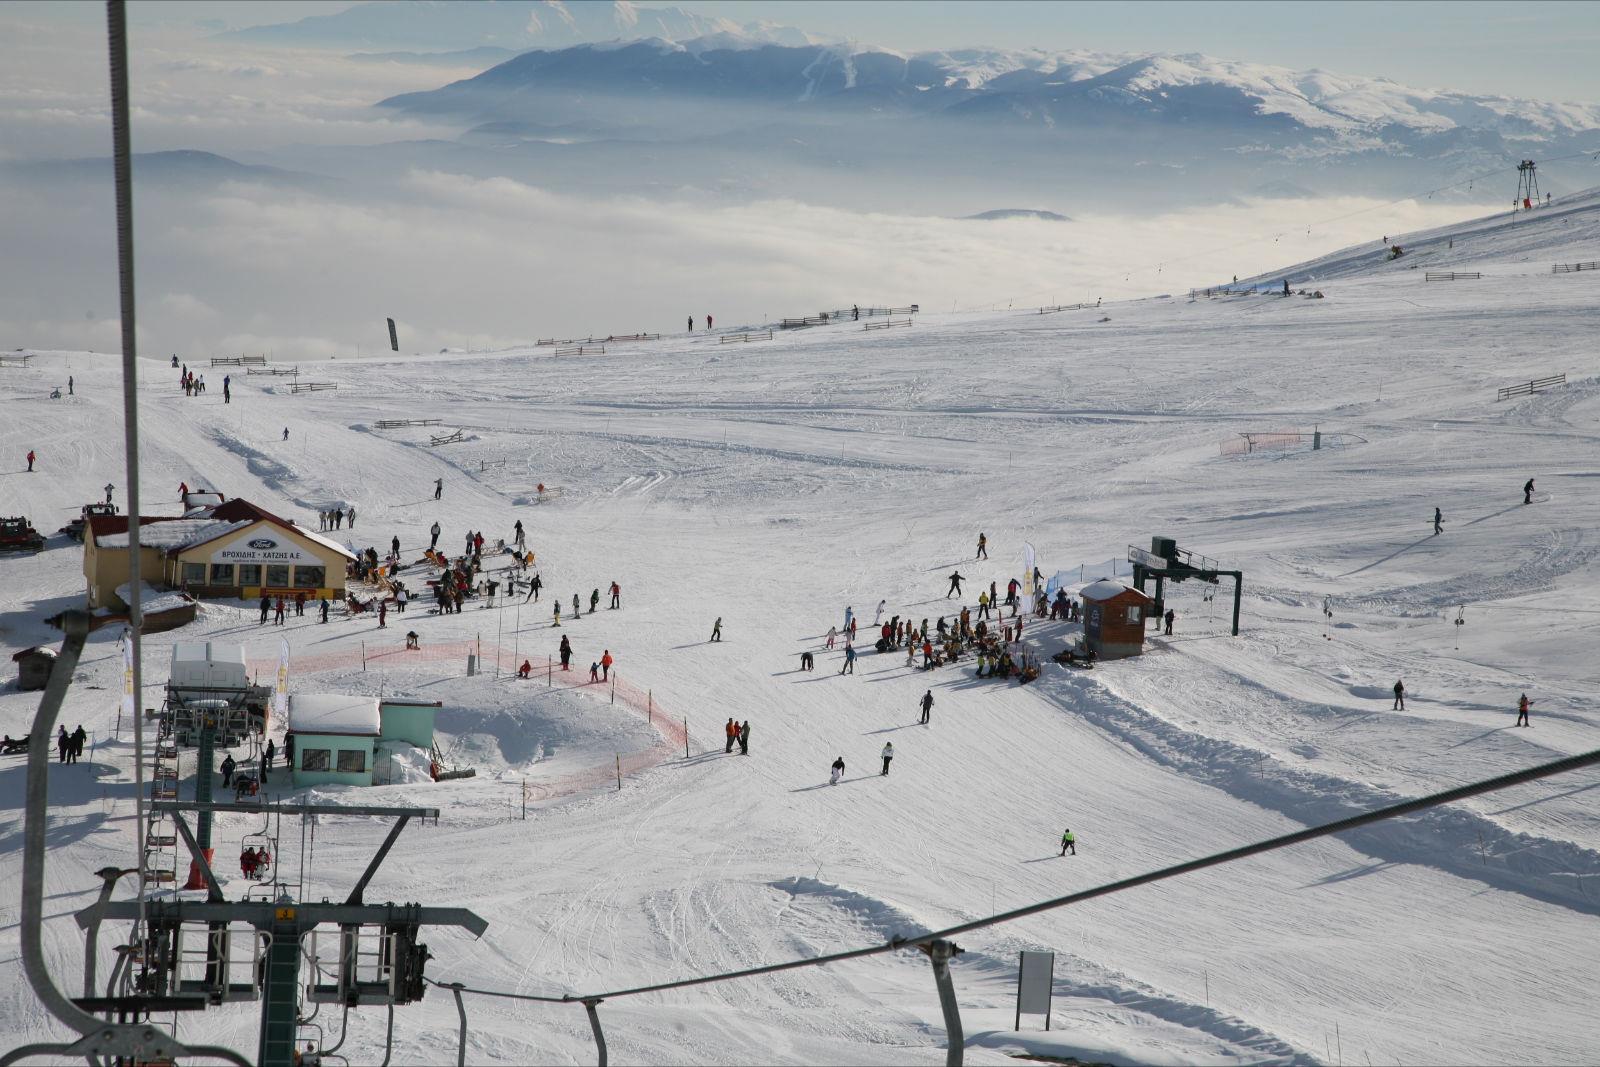 ΕΤΑΔ: Tο Σάββατο 23 Δεκεμβρίου ανοίγουν τις πόρτες τους τα Χιονοδρομικά Κέντρα (pic)